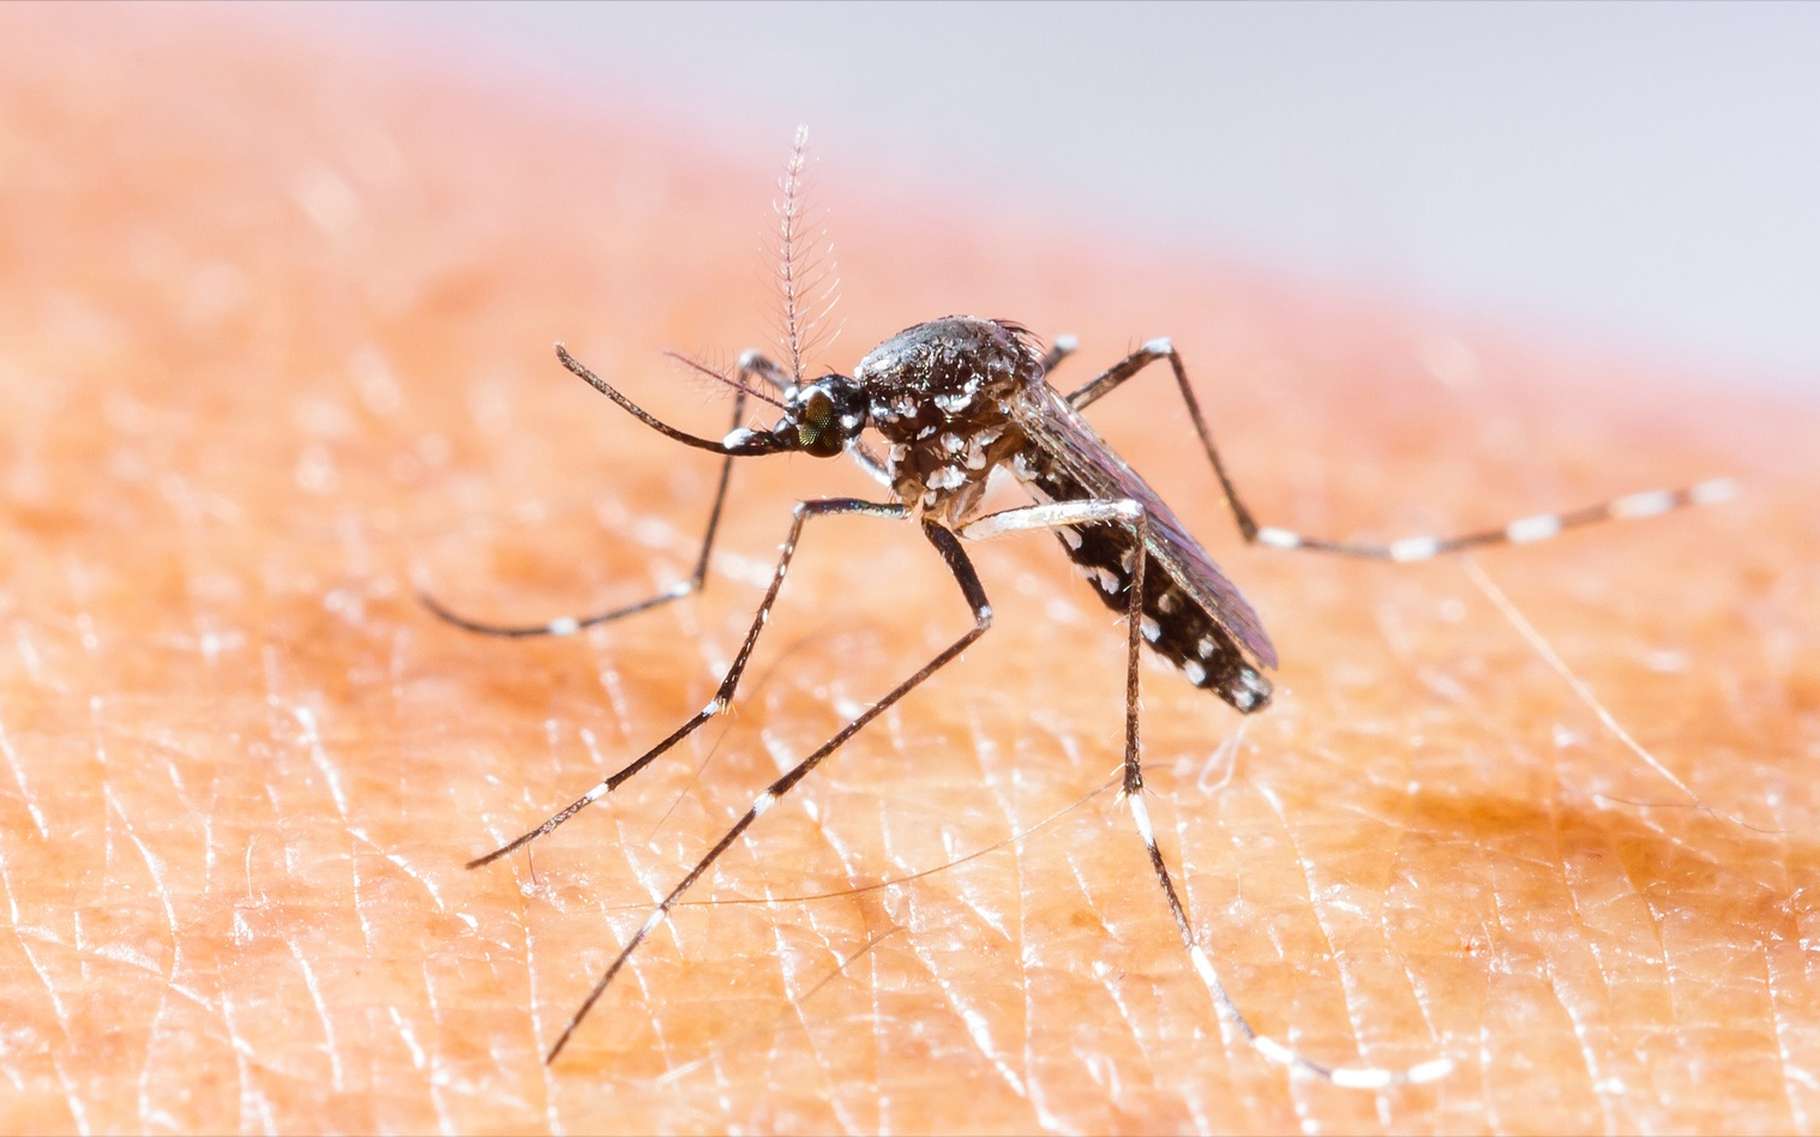 Le moustique-tigre peut être vecteur du virus Zika. © Smith1972, Shutterstock